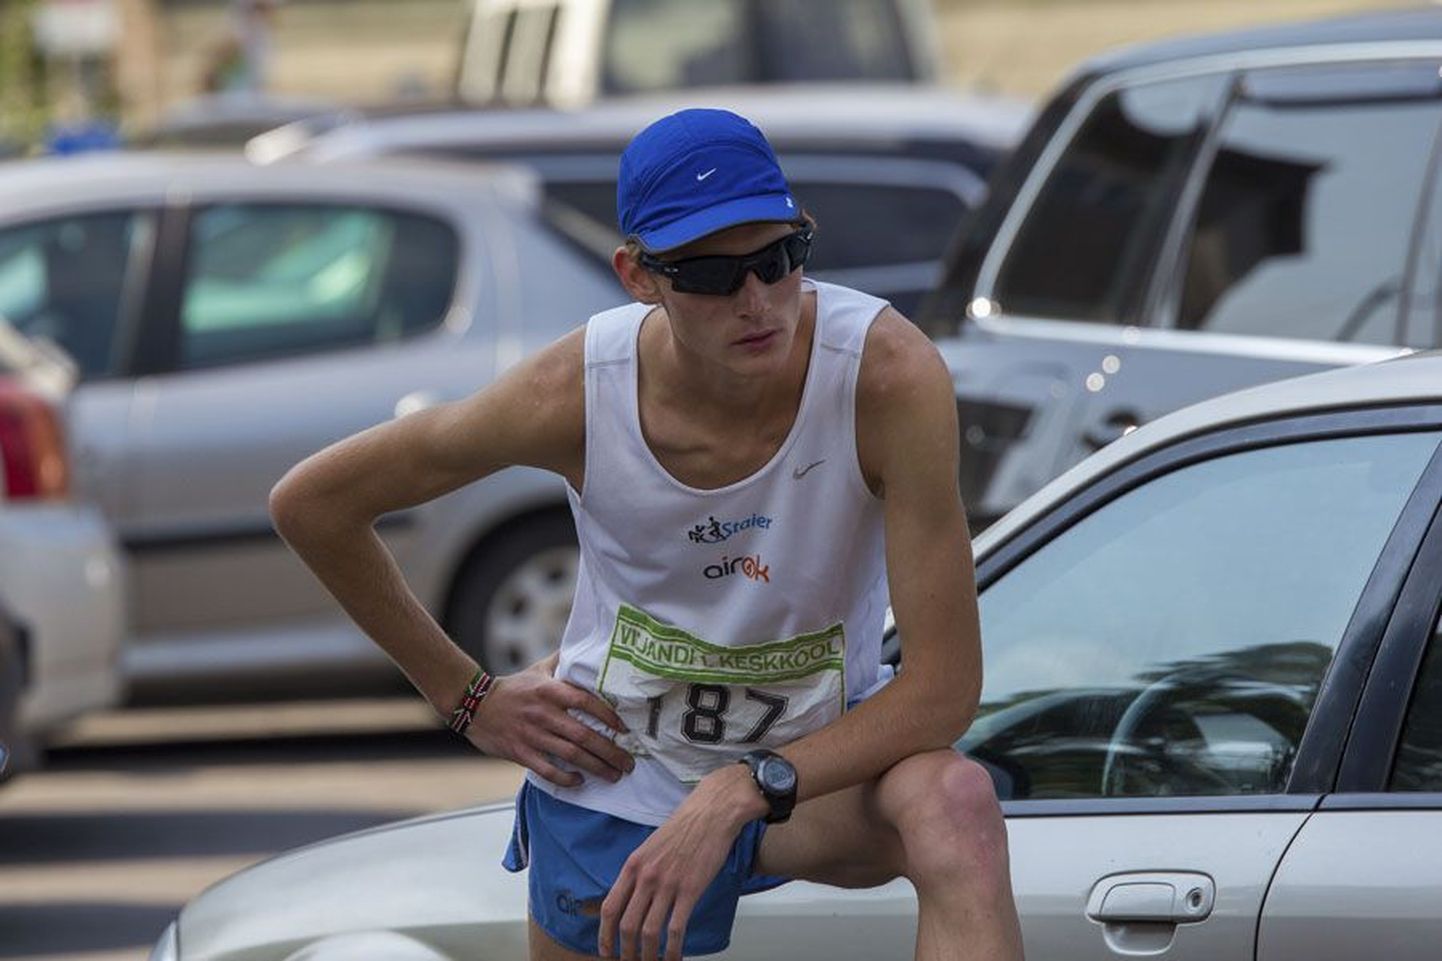 21-aastane Heinar Vaine tegi pühapäeval oma elu kiireima maratonijooksu ja nüüd kuulub tema nimele ka maakonna selle distantsi rekord. Ühtlasi pälvis ta noorsooklassis Eesti meistri tiitli ja sai täiskasvanute arvestuses hõbemedali. SEB Tallinna maratonil saavutas ta kolmanda koha. Pilt on tehtud tänavu suvel ühe Eesti nimekaima maratonijooksja Jüri Lossmanni mälestusvõistlustel.